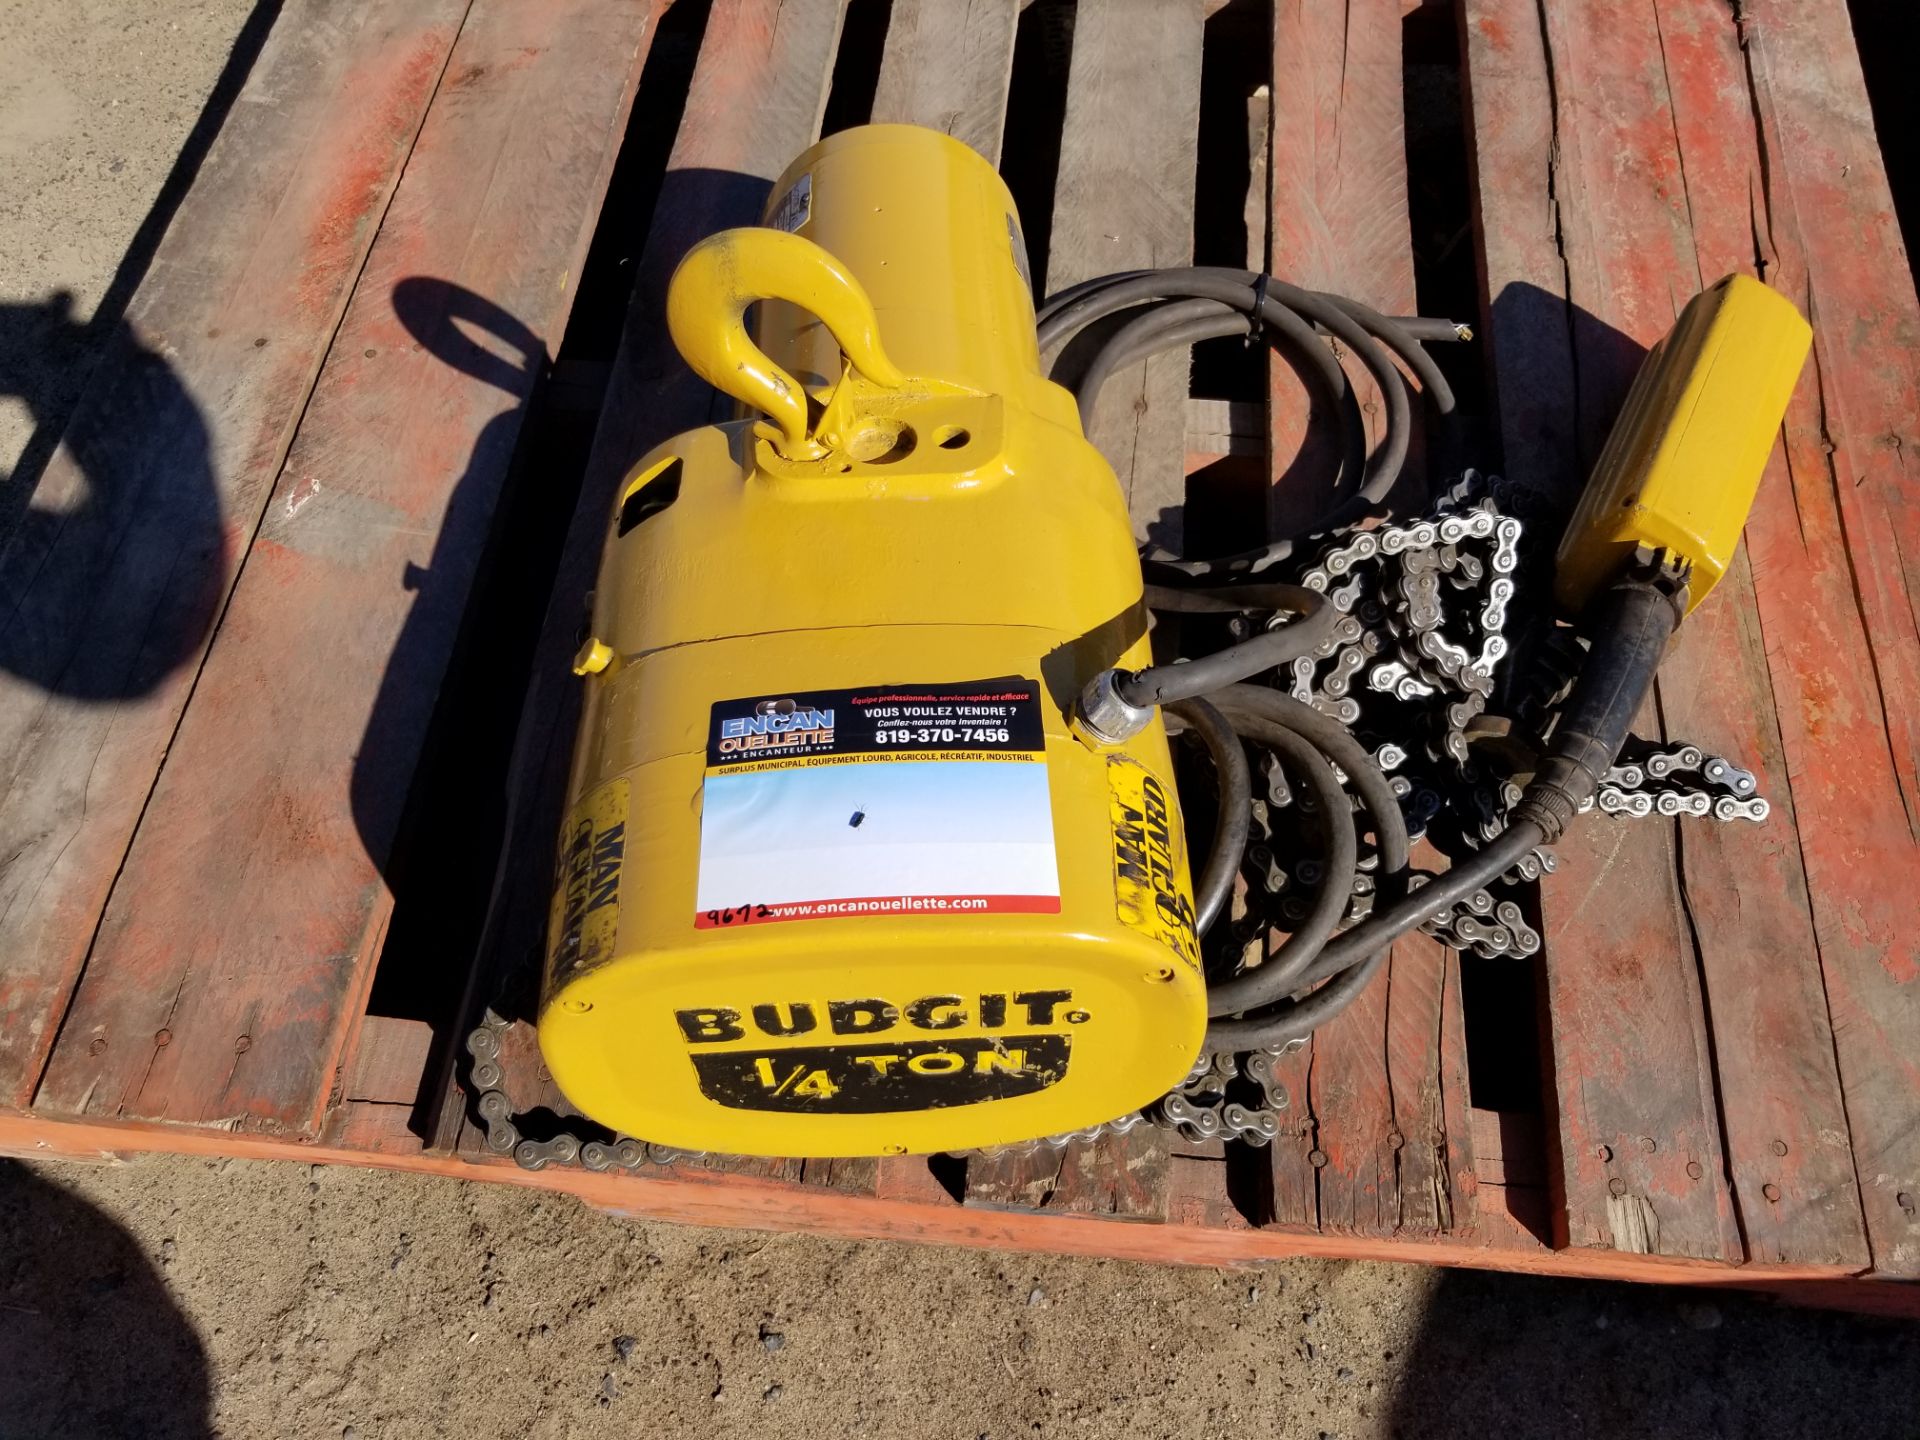 Chain block électrique 1/4 tonne marque Budgit 110 volts #9672